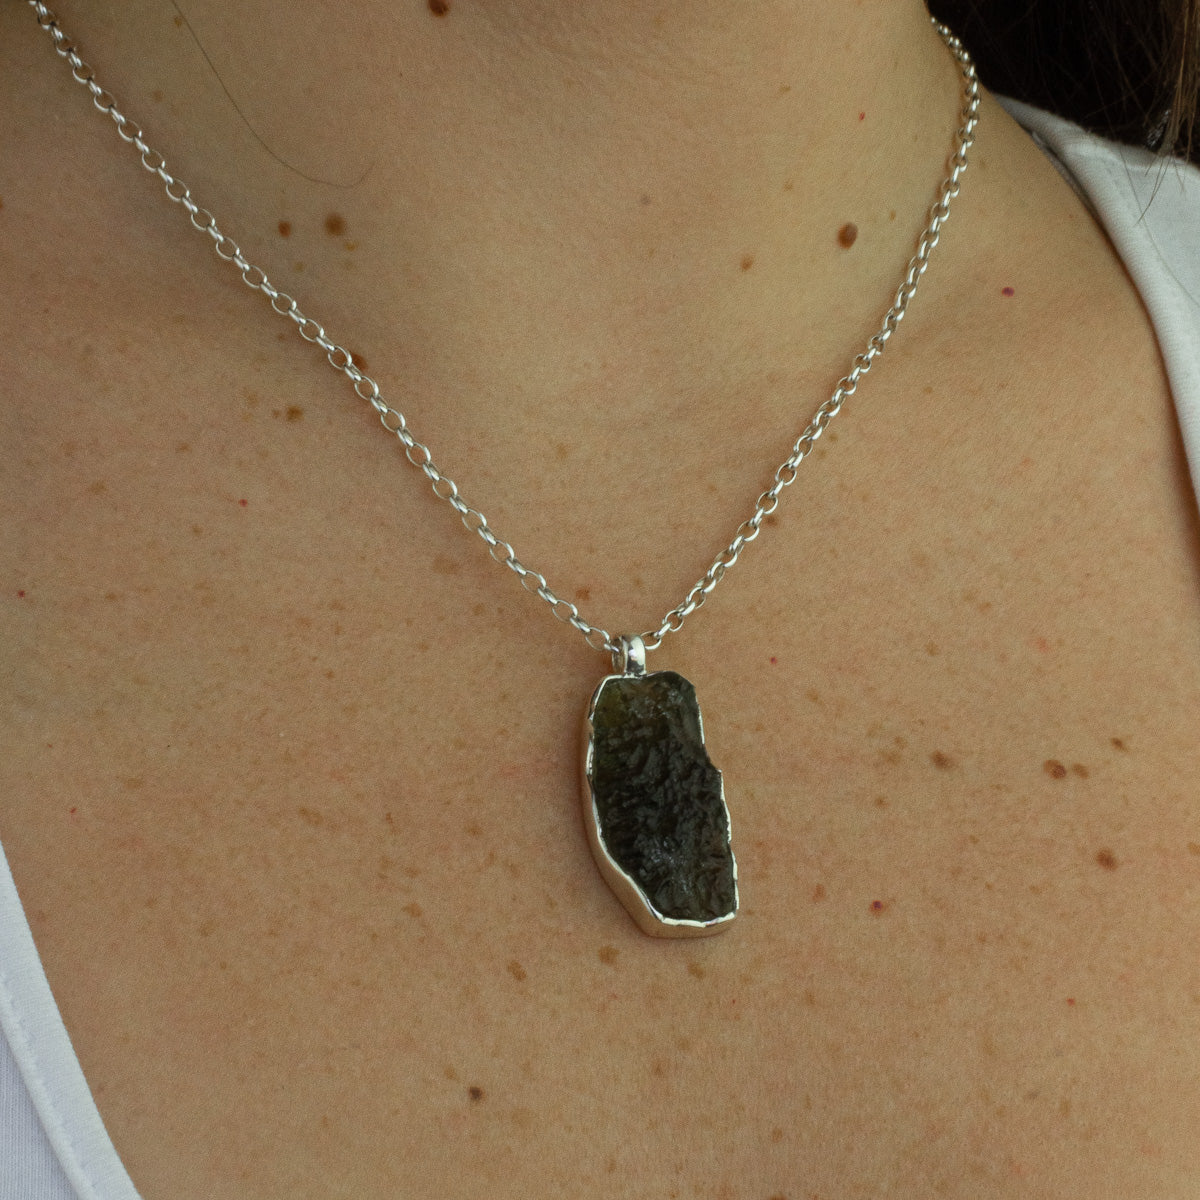 Moldavite necklace